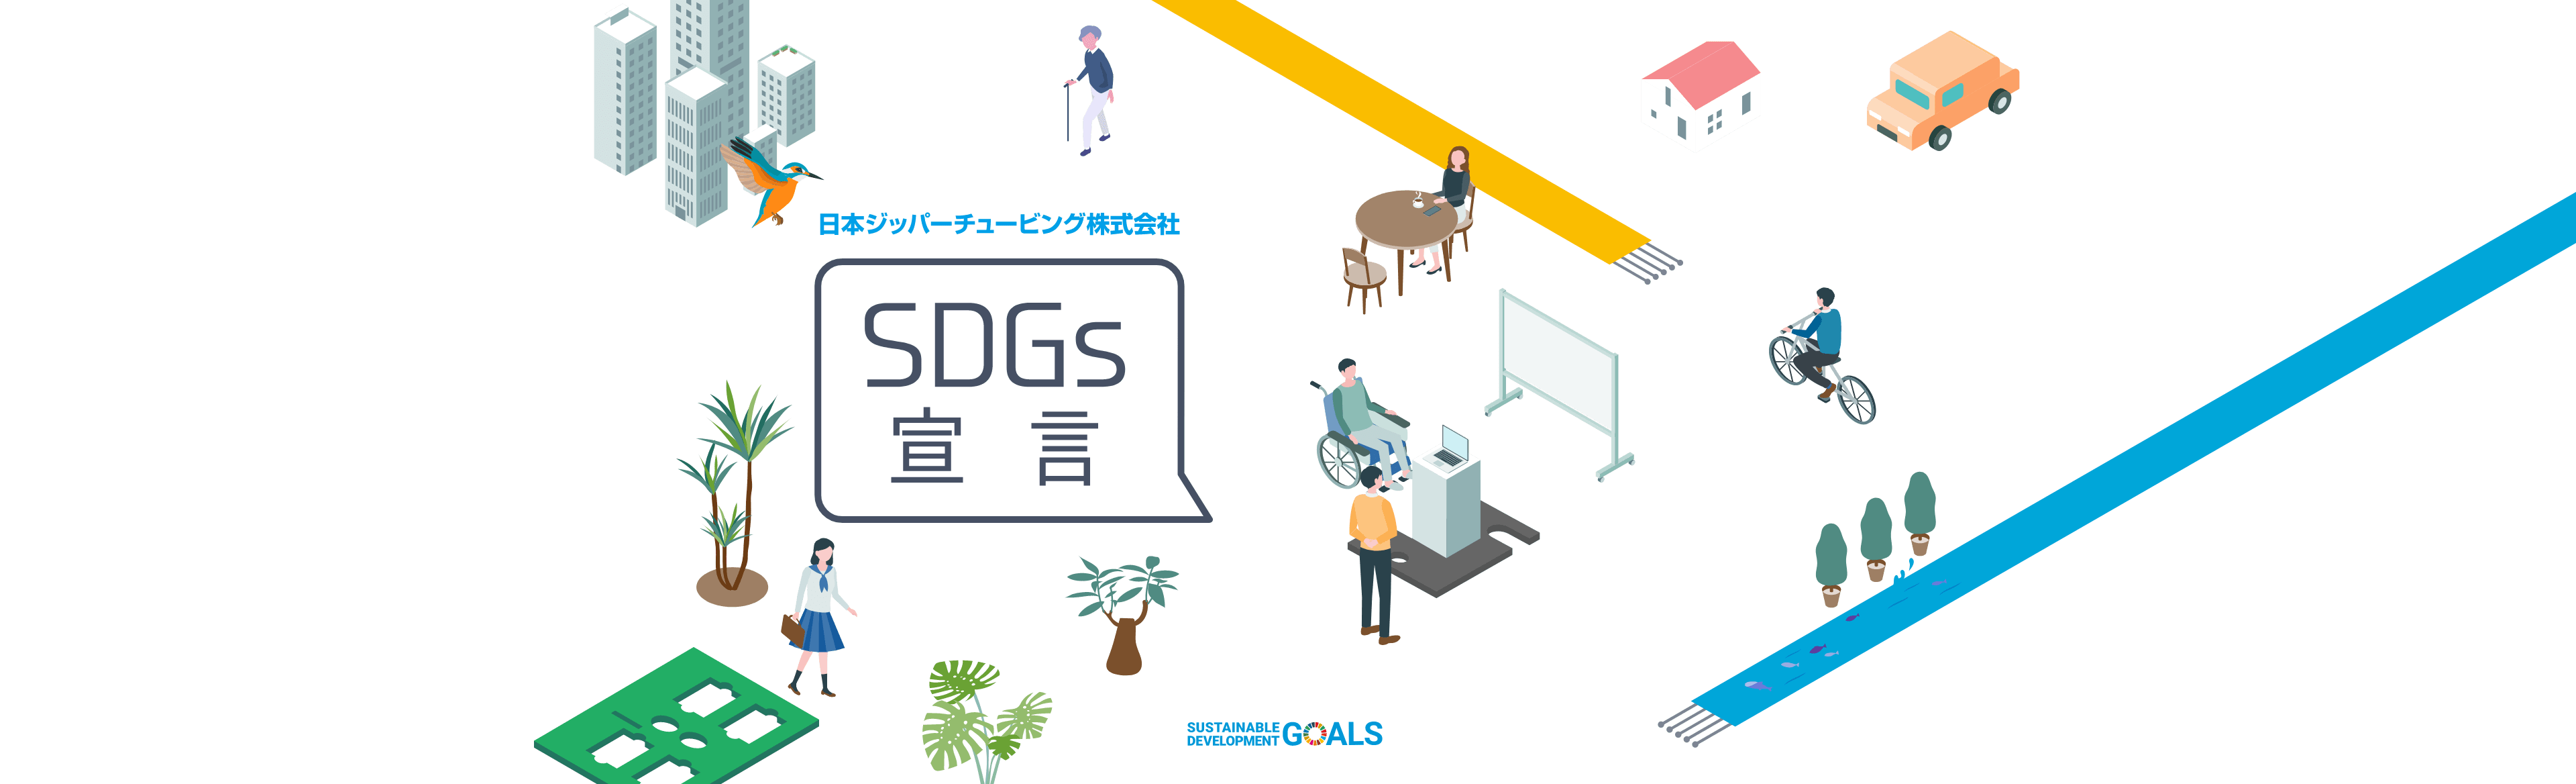 日本ジッパーチュービング株式会社 SDGs宣言